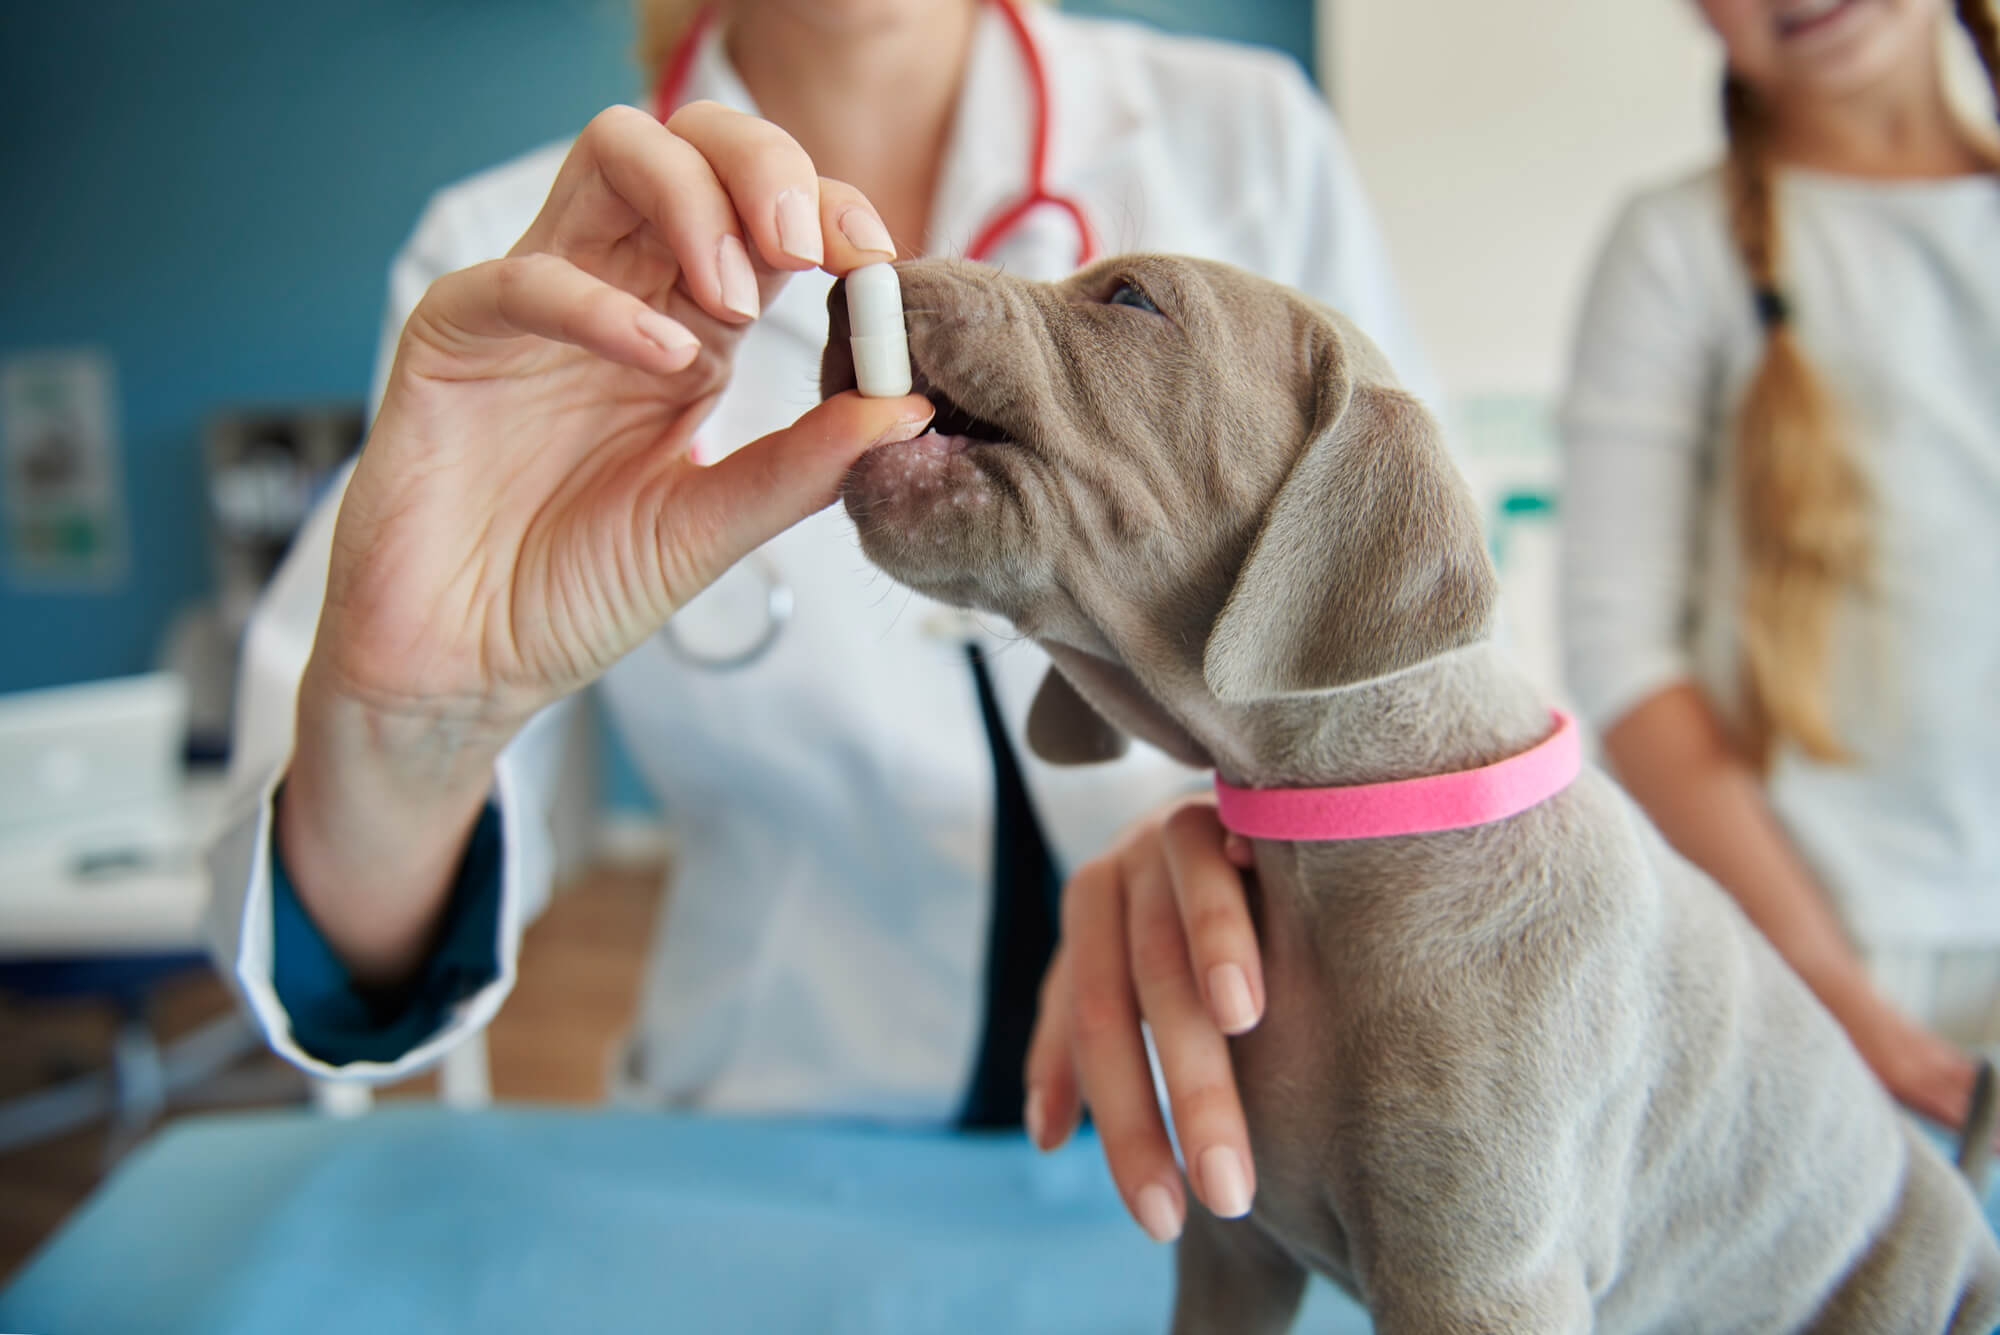 A imagem mostra uma veterinária segurando um comprimido com uma das mãos e com a outra apoiada em um cachorro marrom com coleira pink.